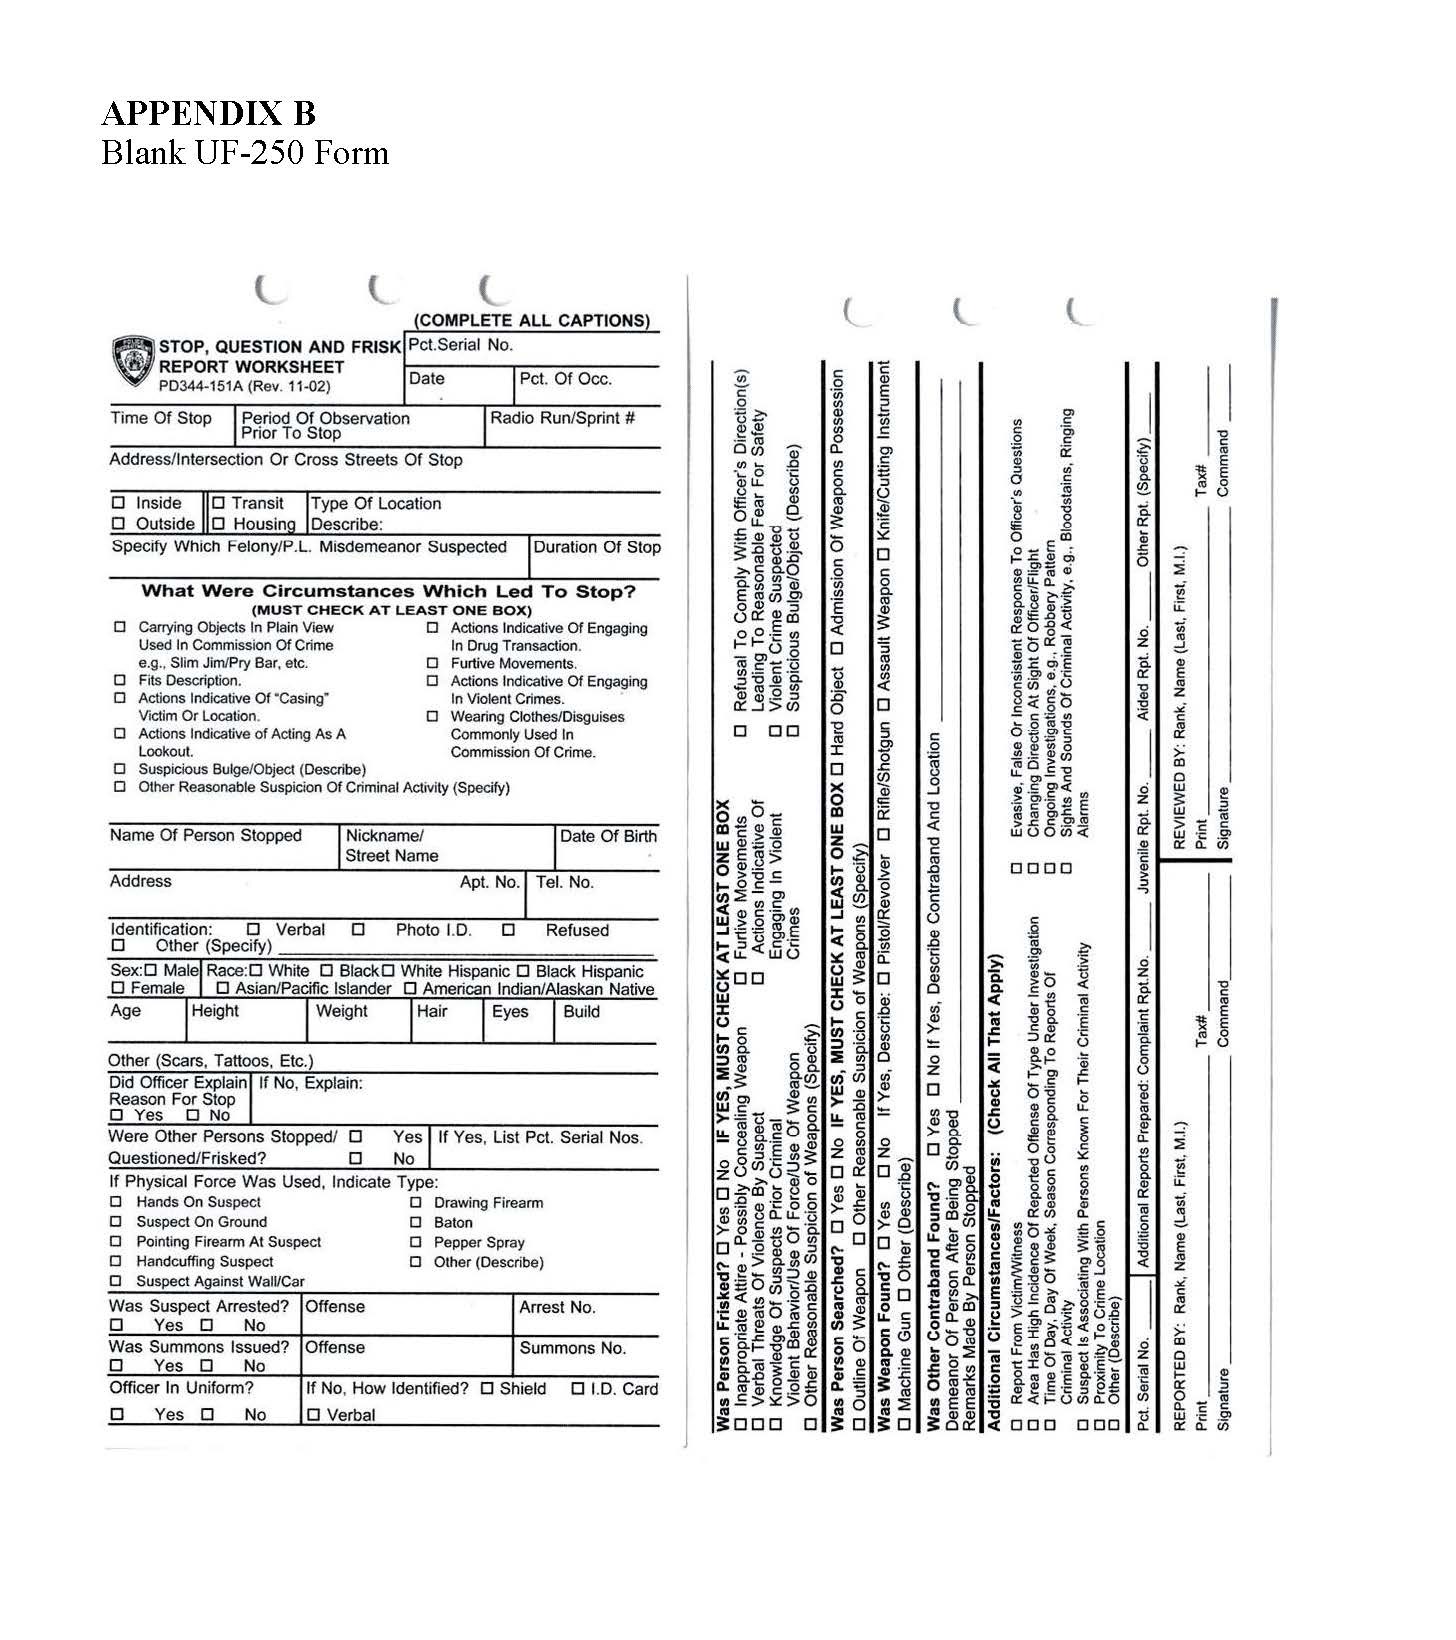 Blank UF-250 form